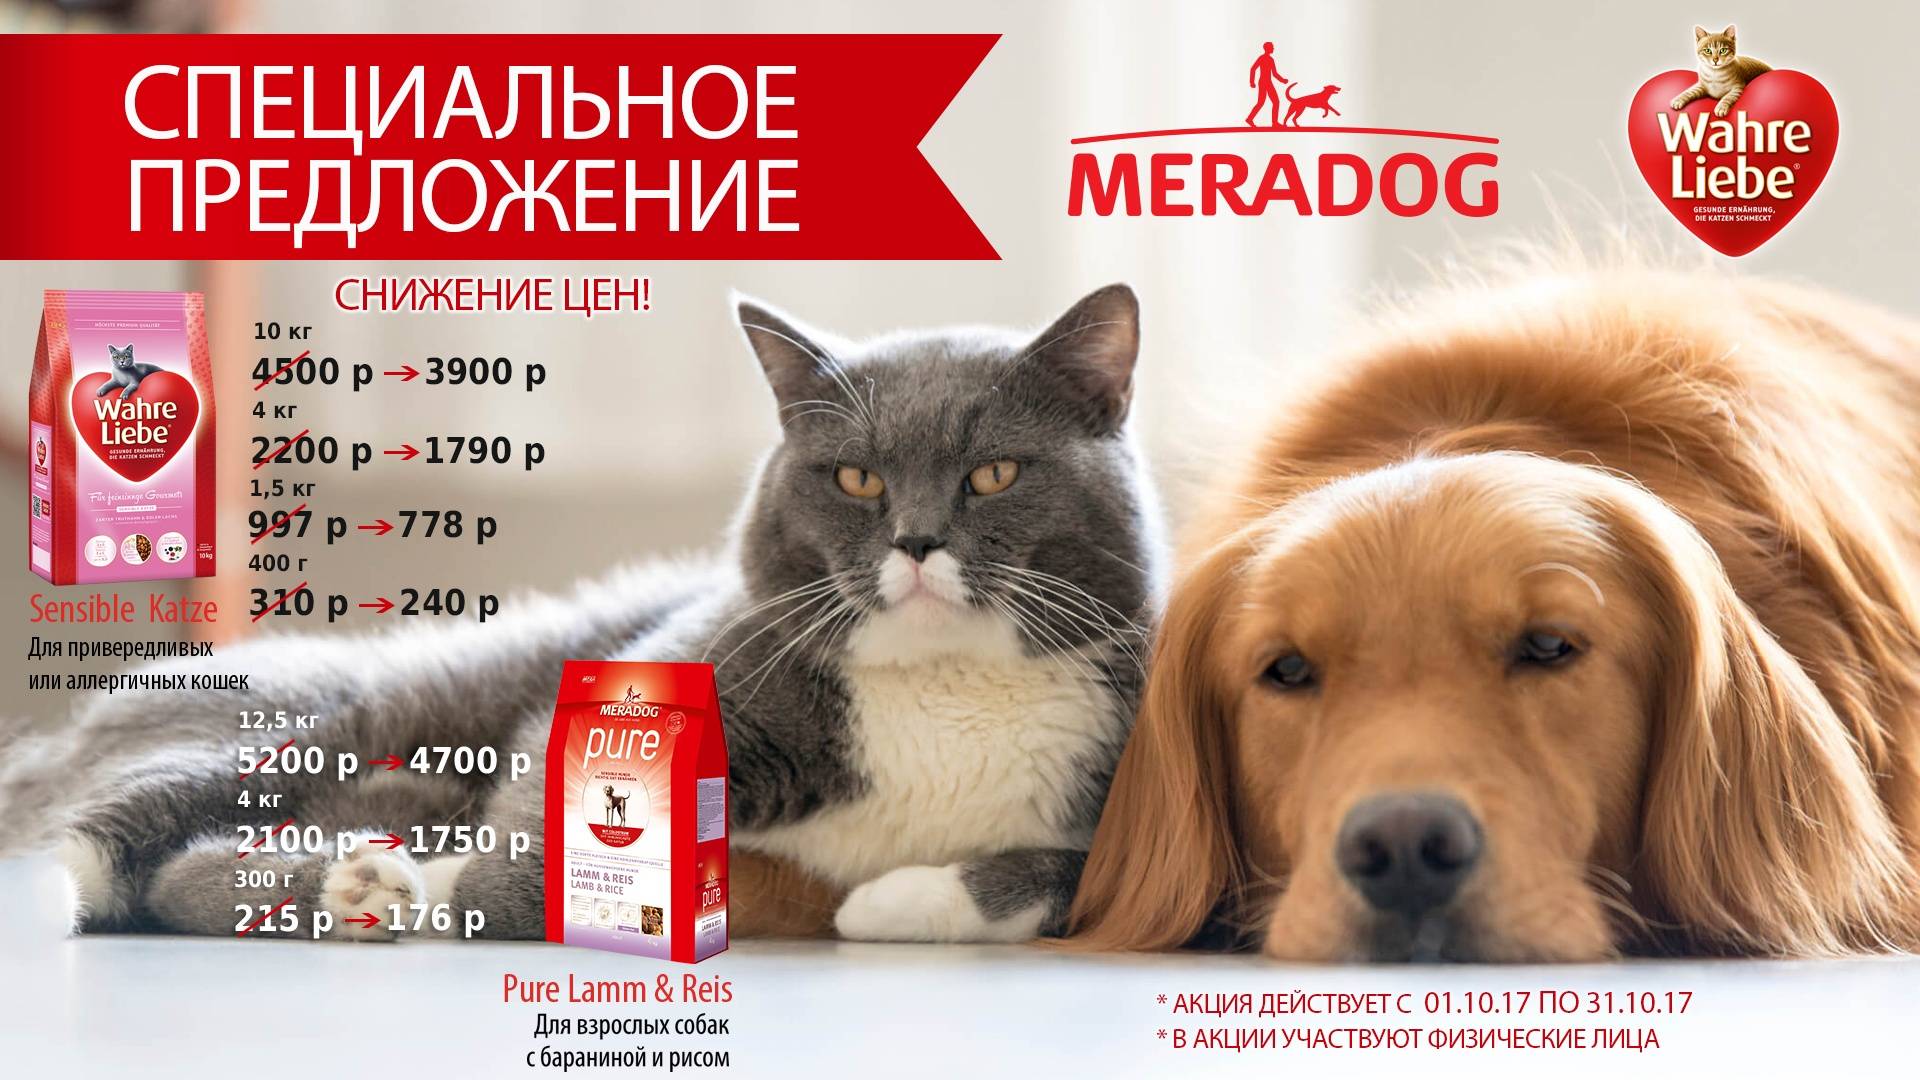 Meradog – немецкий бренд собачьего питания